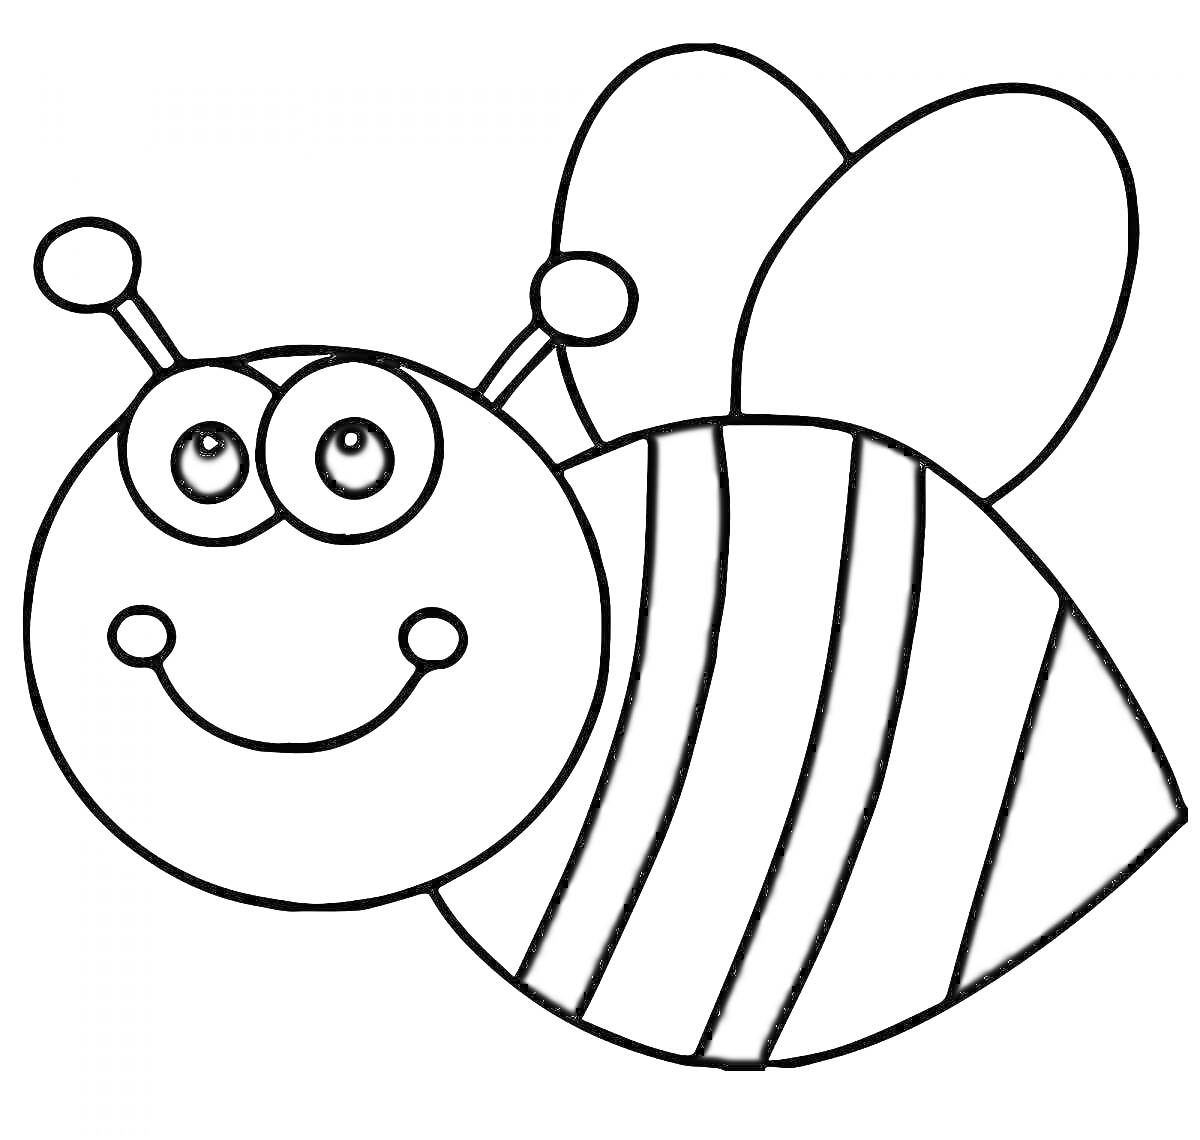 Раскраска Пчела с большими глазами, улыбкой, двумя усиками и крыльями.